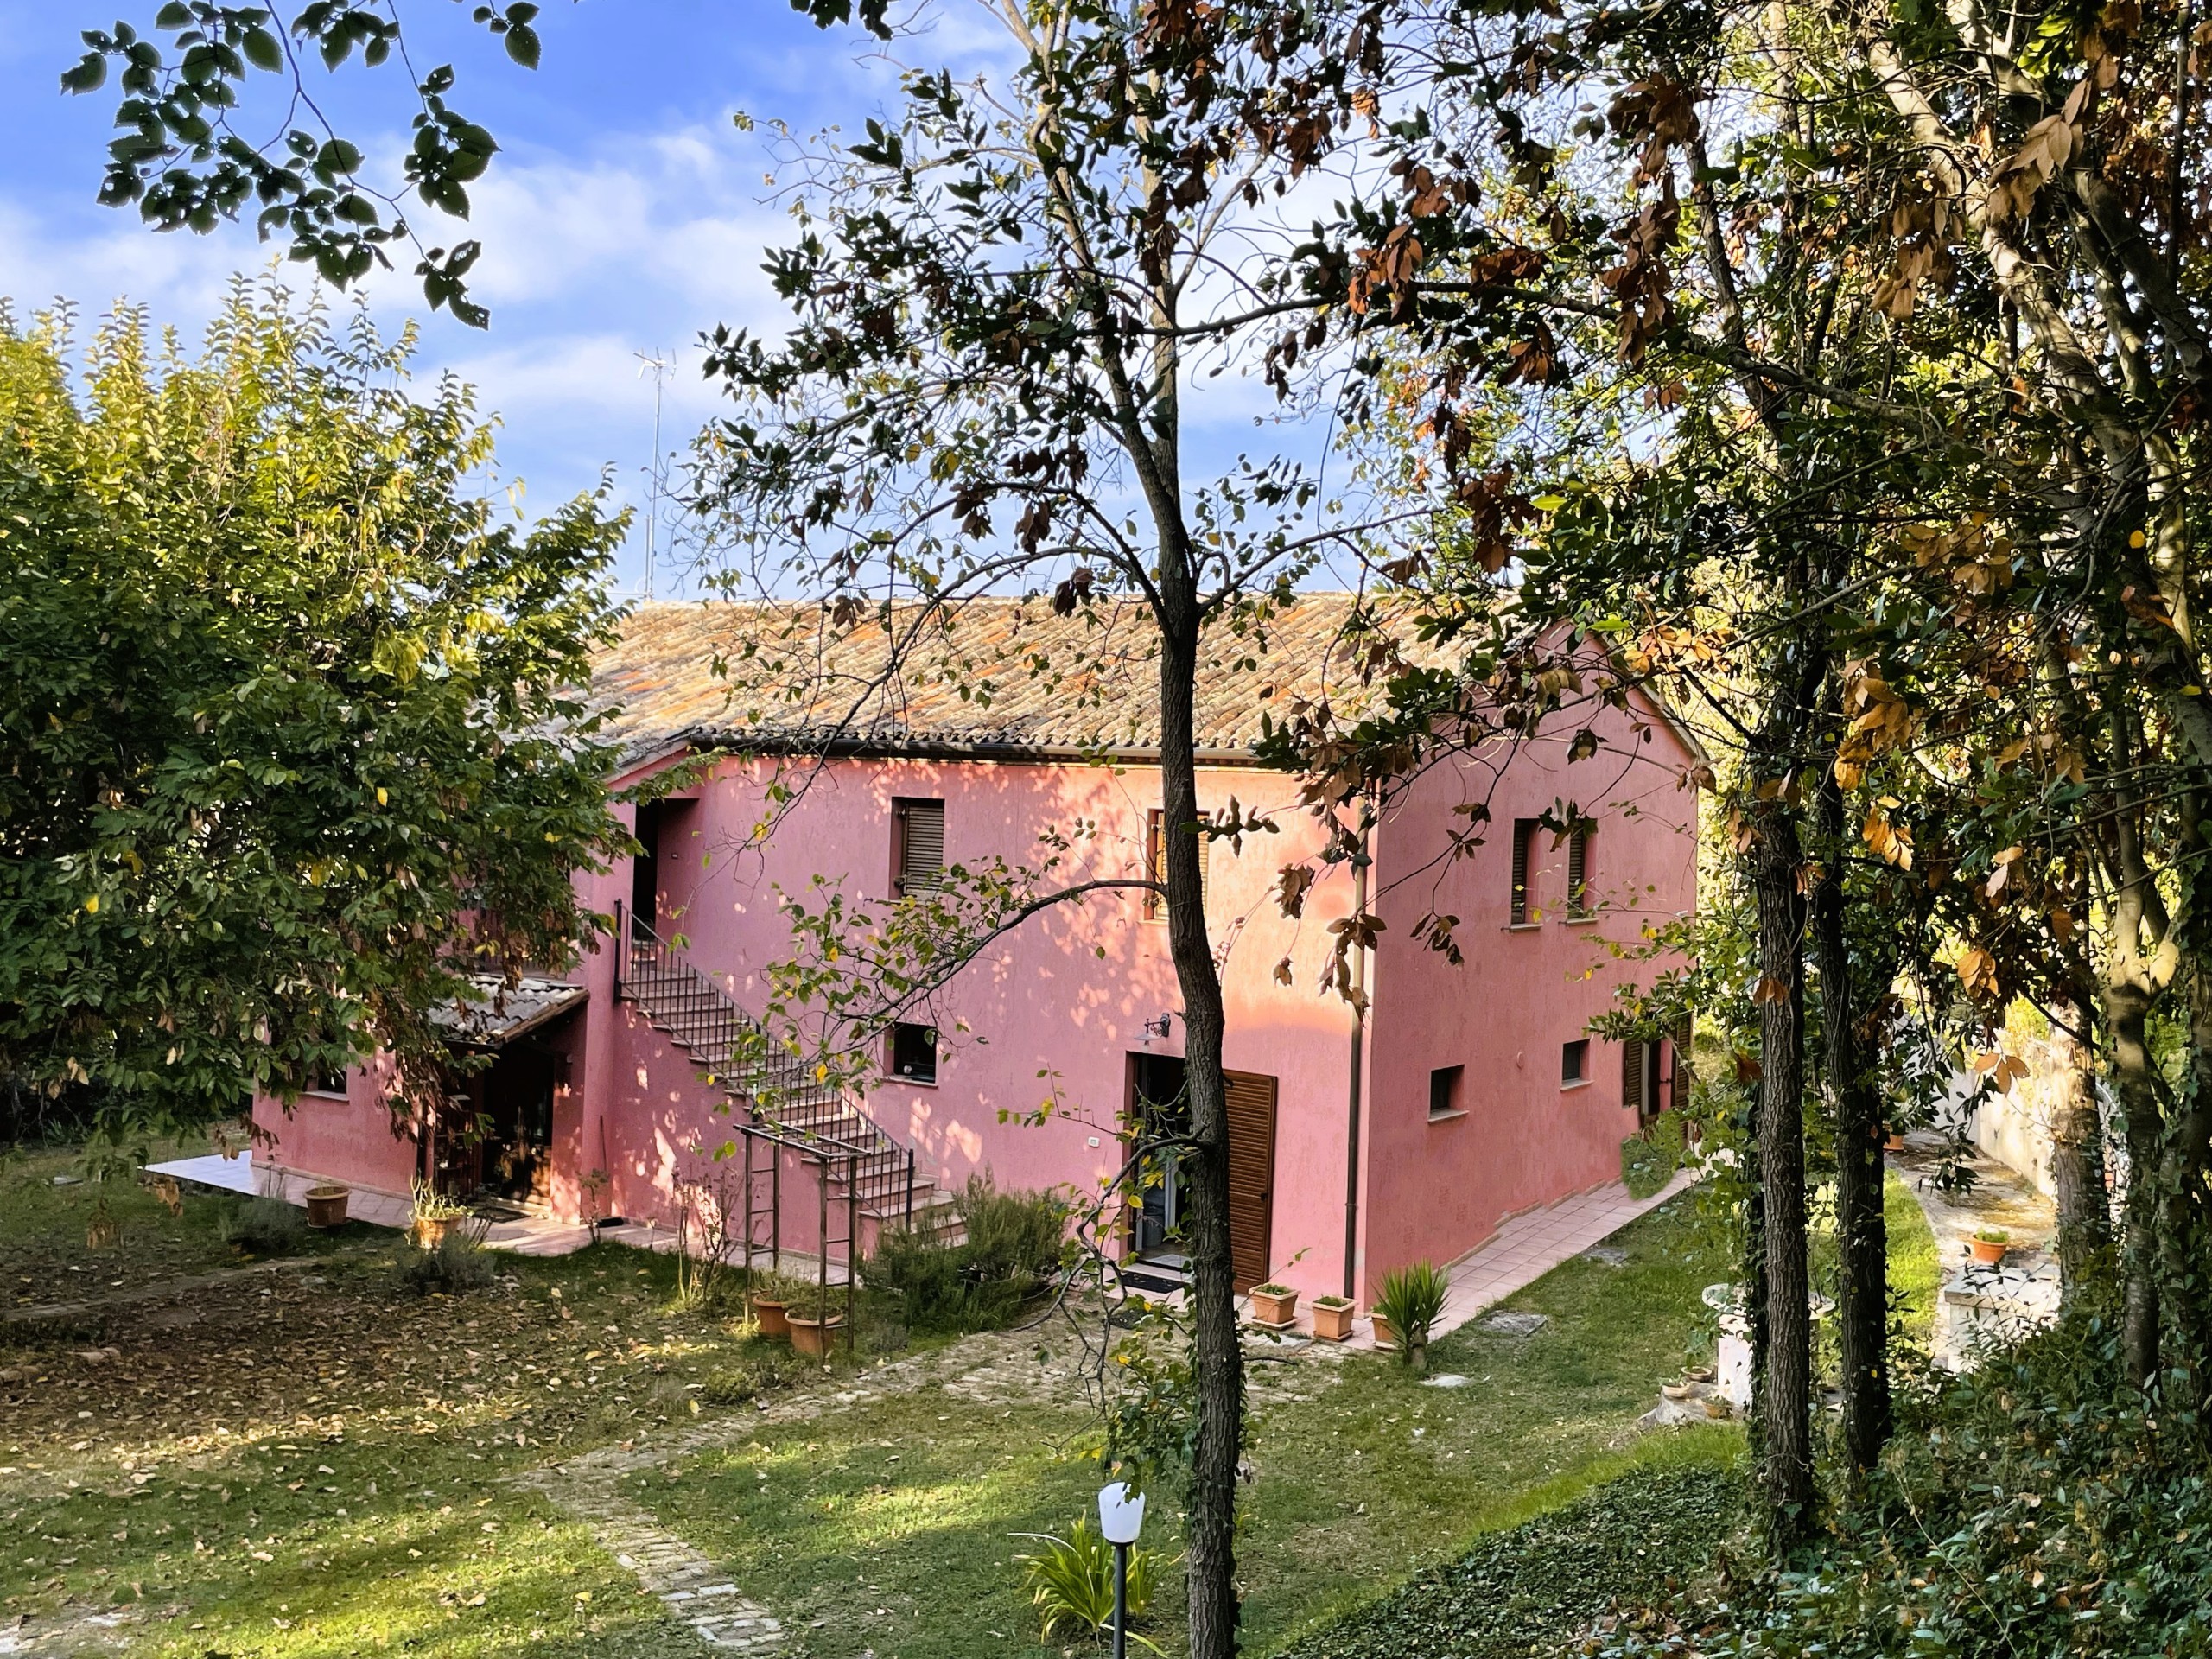 Rustico con giardino in via della baviera, Ancona